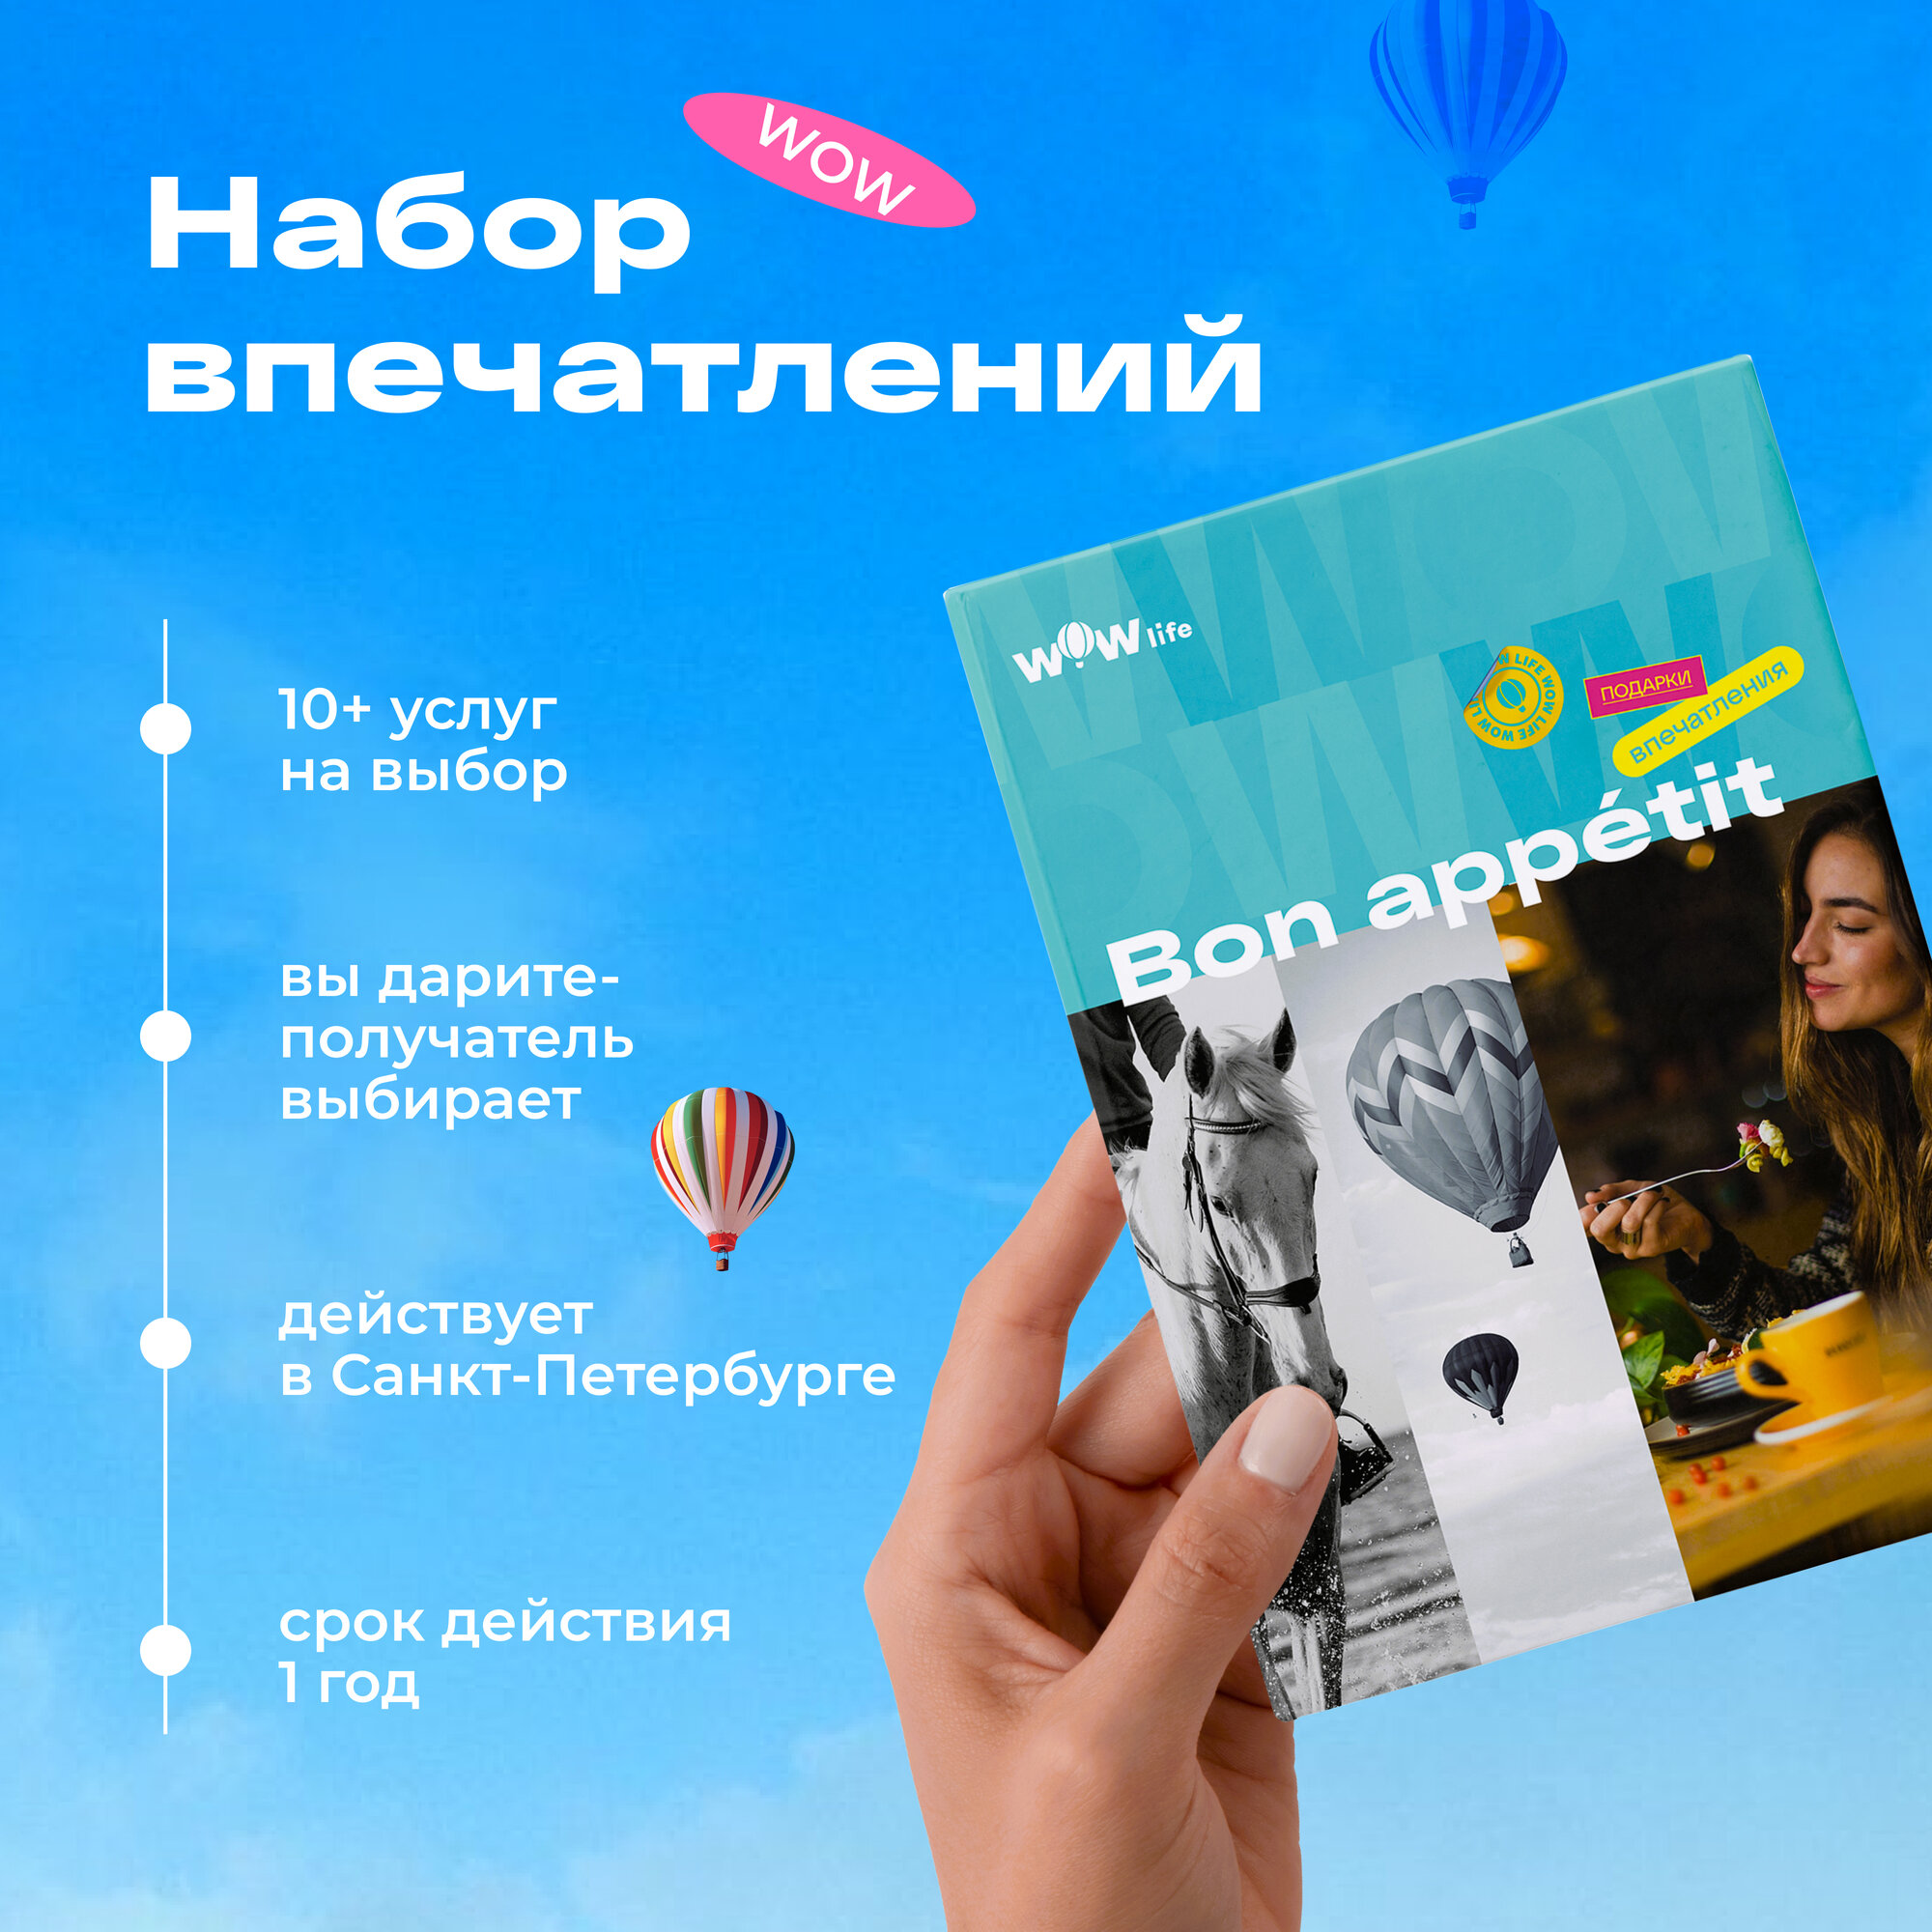 Подарочный сертификат WOWlife "Bon appetit" - набор из впечатлений на выбор, Санкт-Петербург